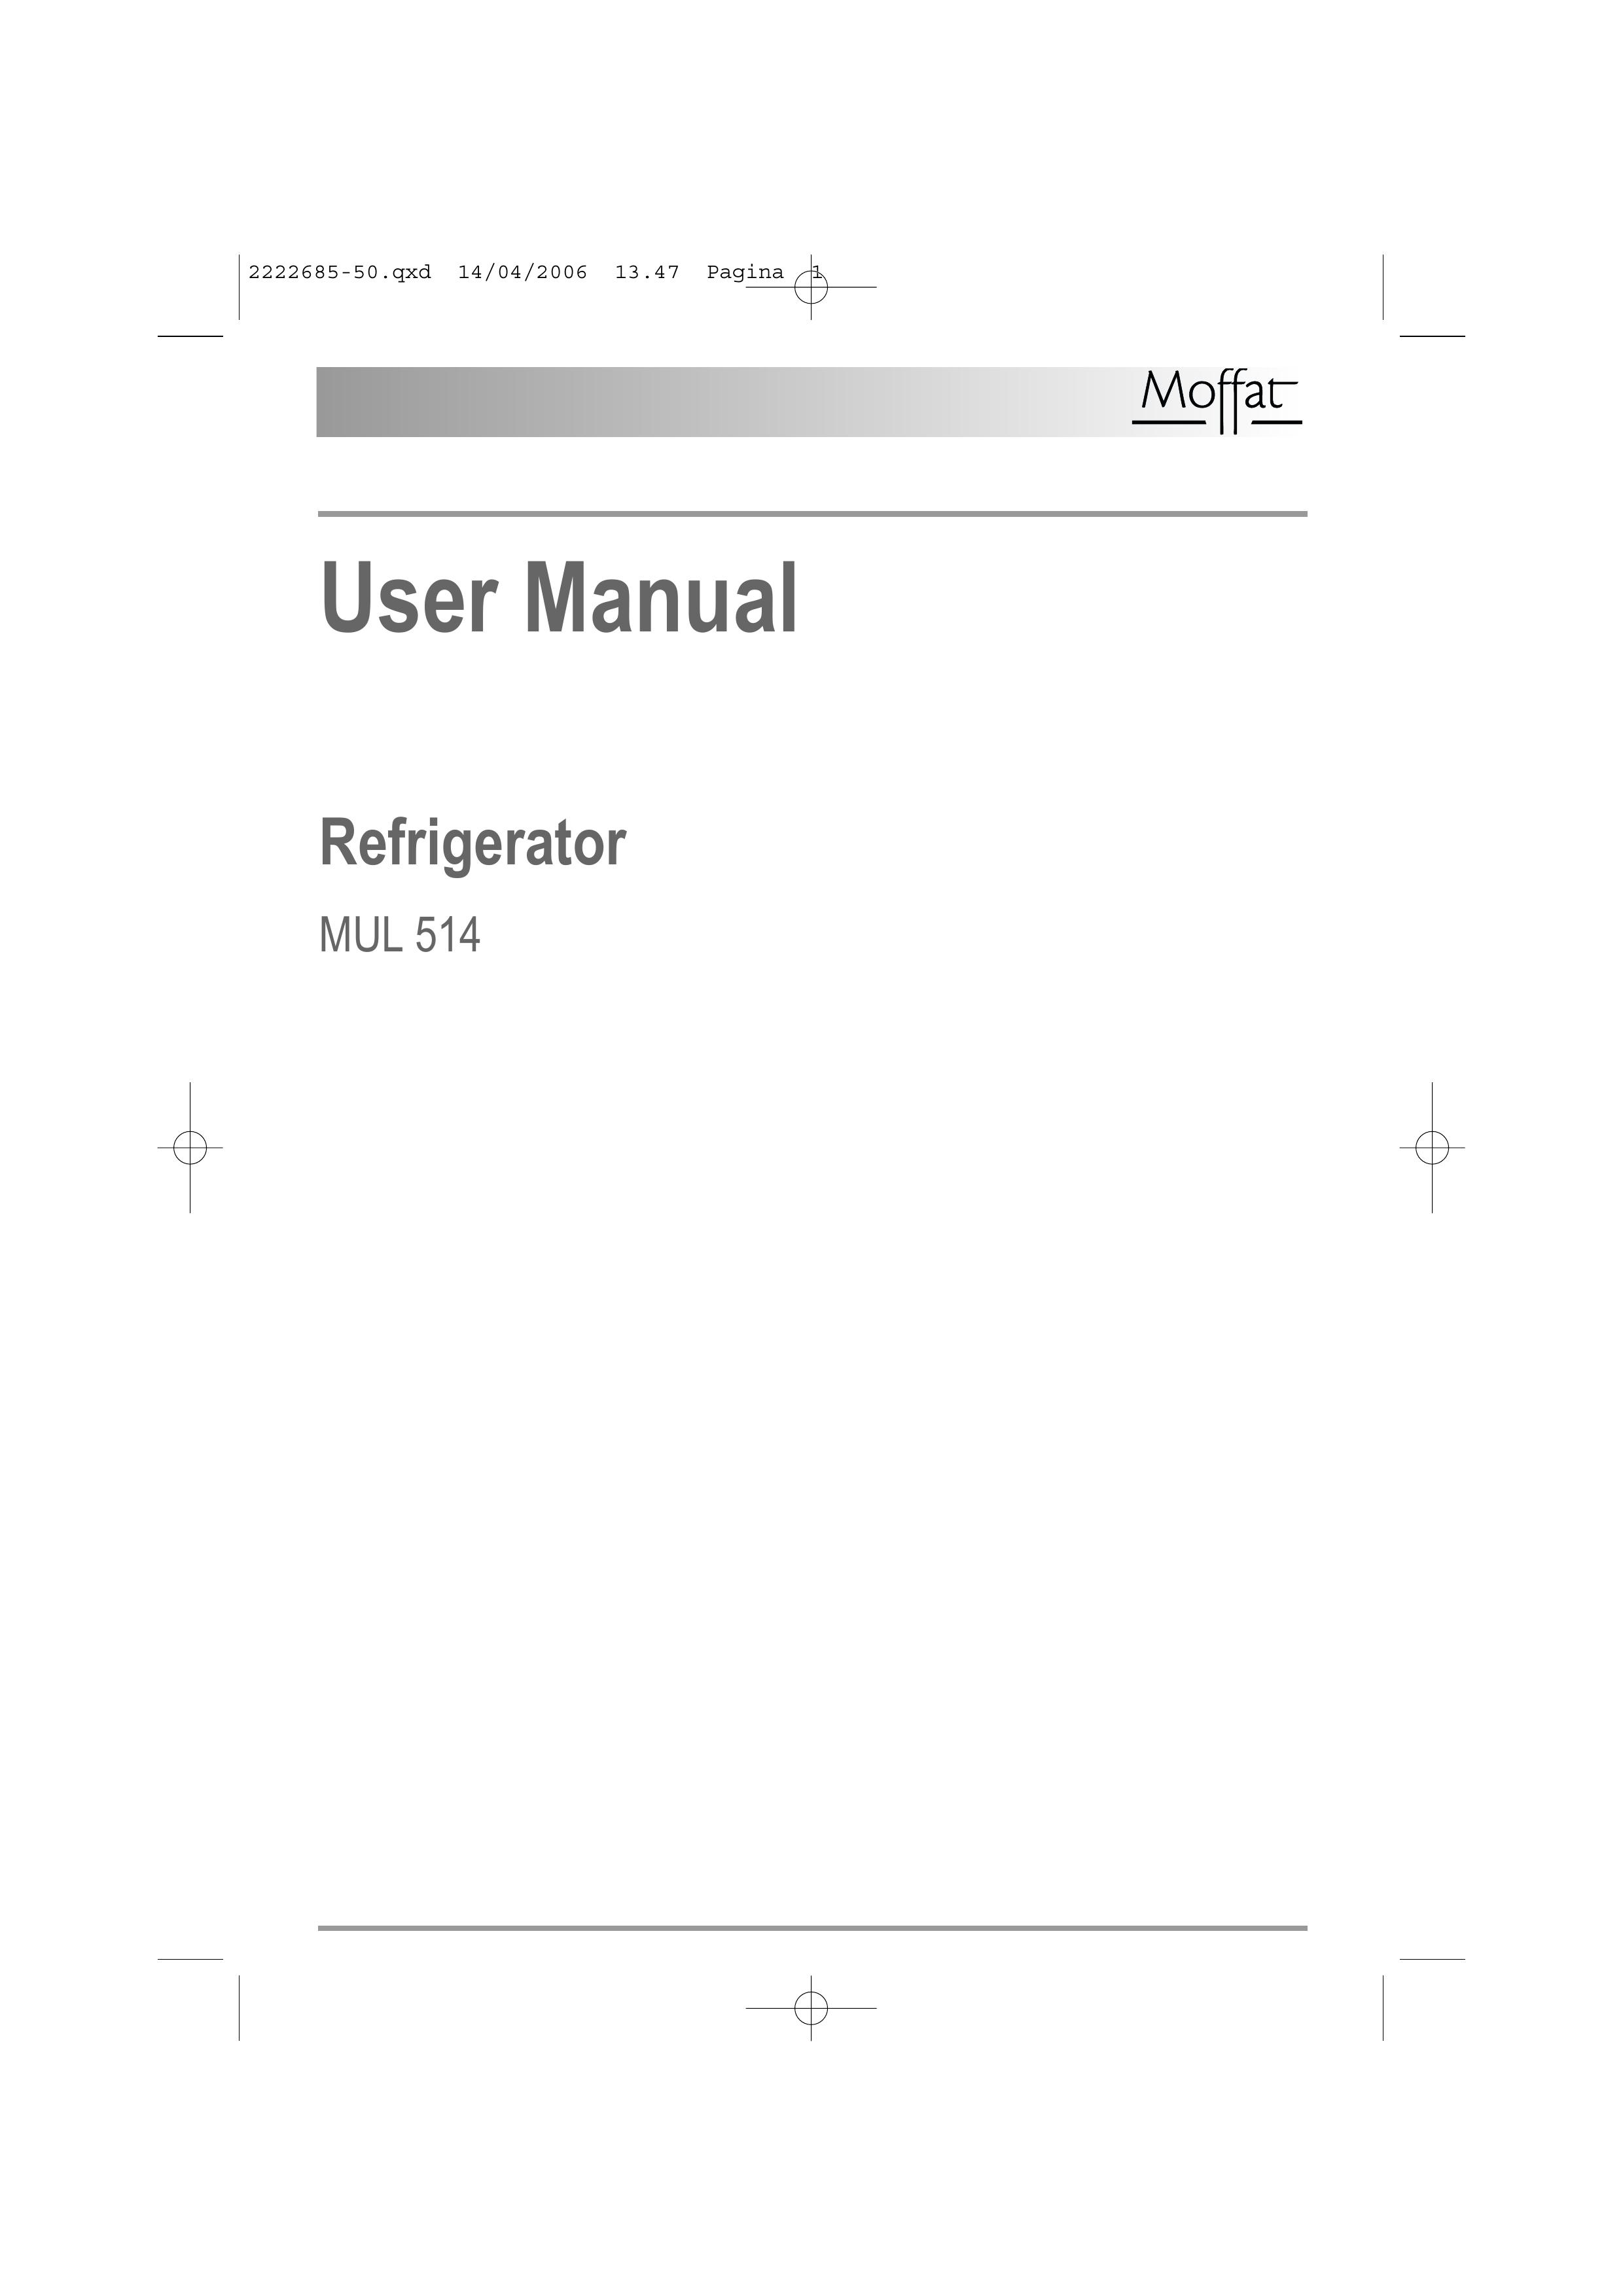 Moffat MUL 514 Refrigerator User Manual